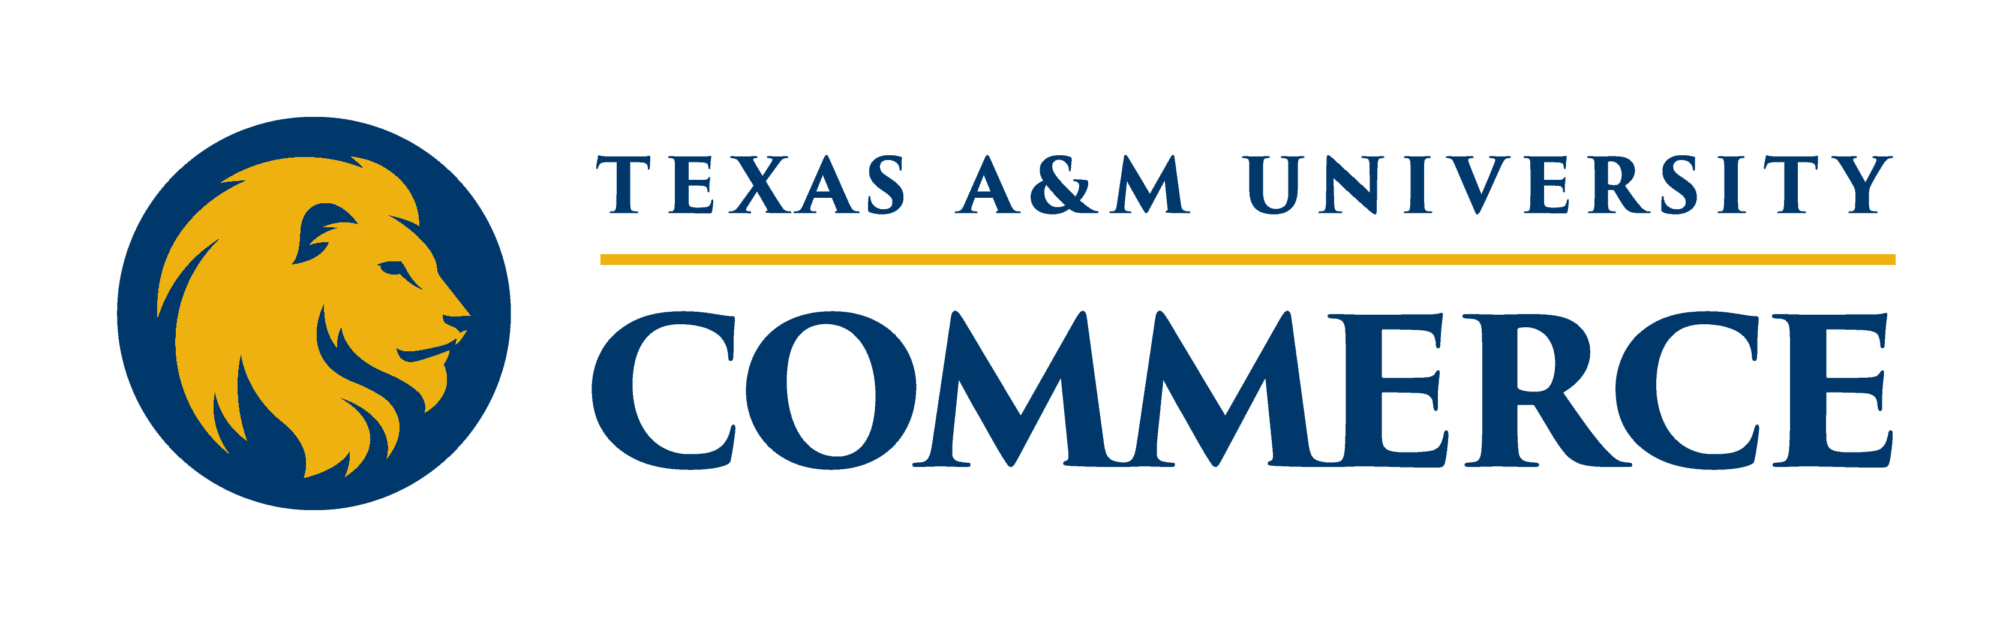 University logo.